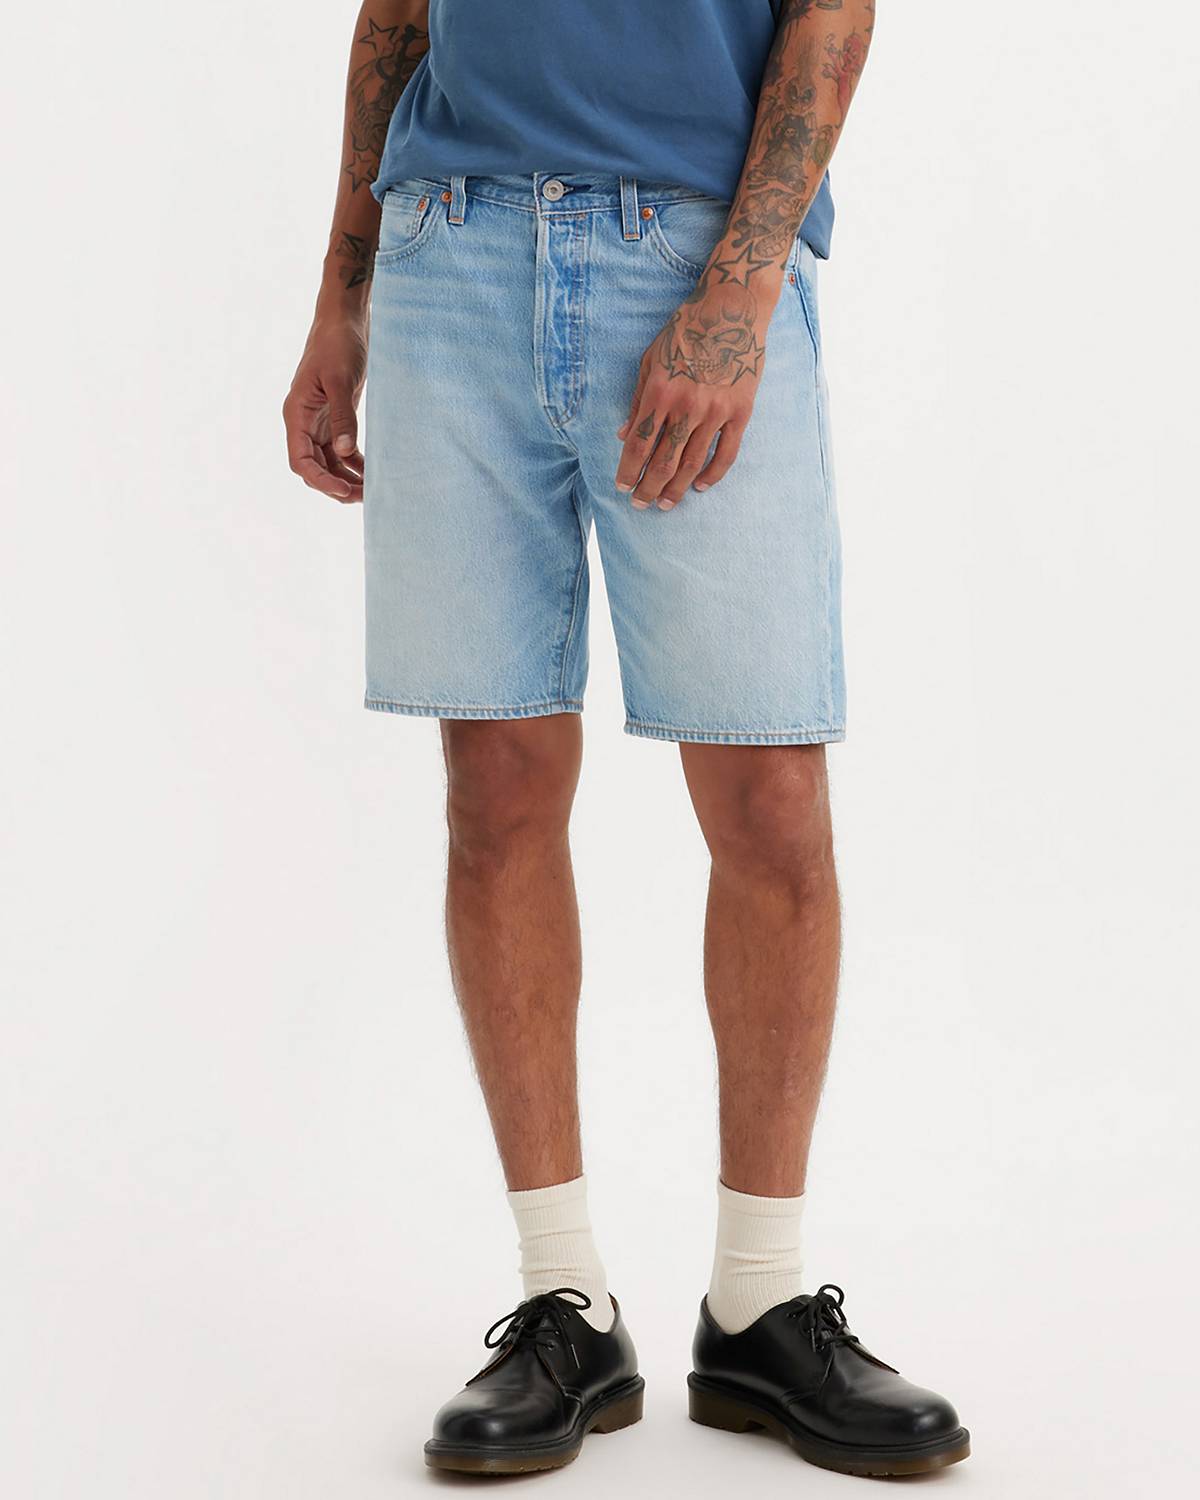 Male model wearing jean shorts.